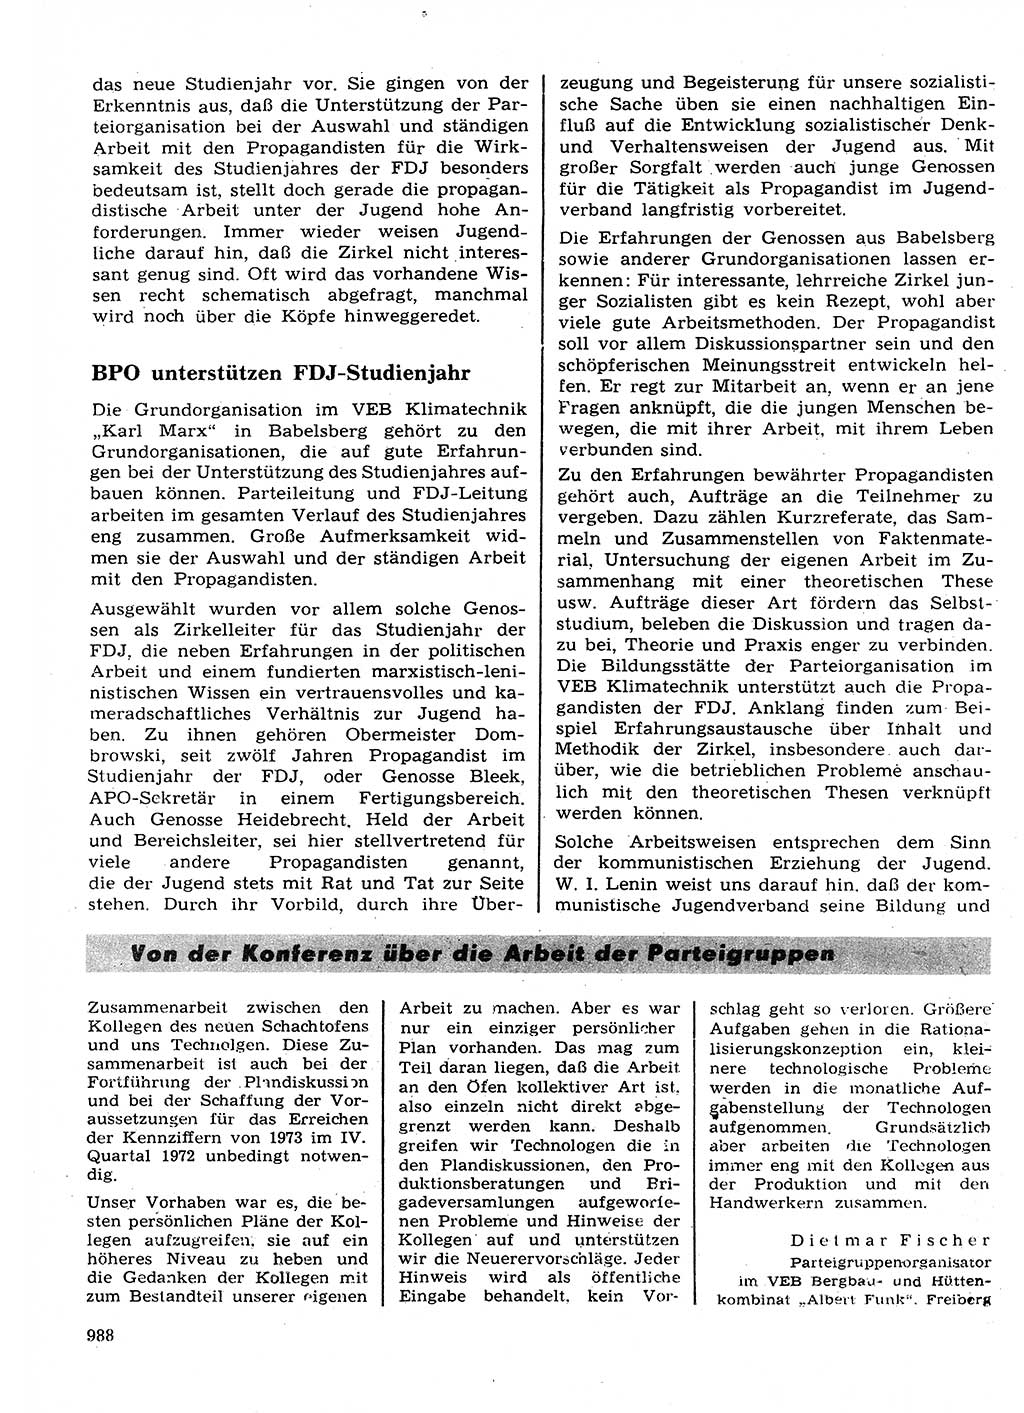 Neuer Weg (NW), Organ des Zentralkomitees (ZK) der SED (Sozialistische Einheitspartei Deutschlands) für Fragen des Parteilebens, 27. Jahrgang [Deutsche Demokratische Republik (DDR)] 1972, Seite 988 (NW ZK SED DDR 1972, S. 988)